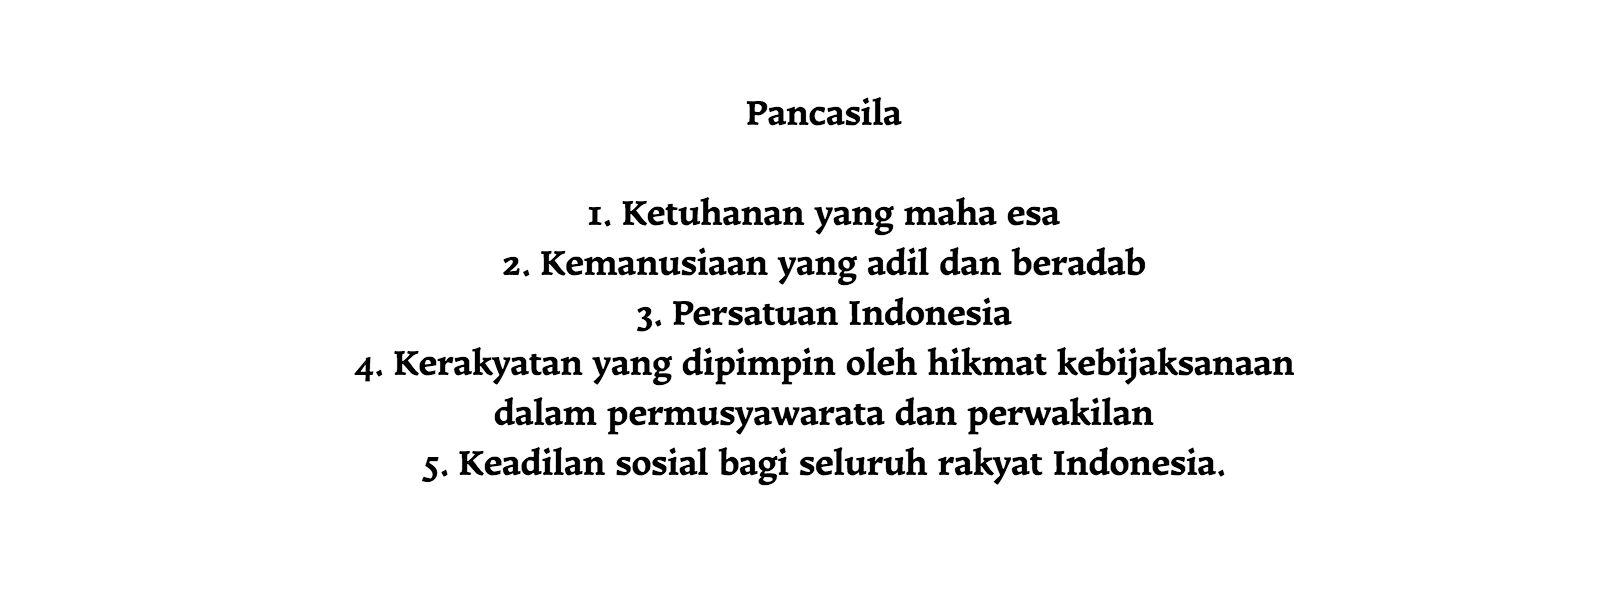 Pancasila - New Naratif